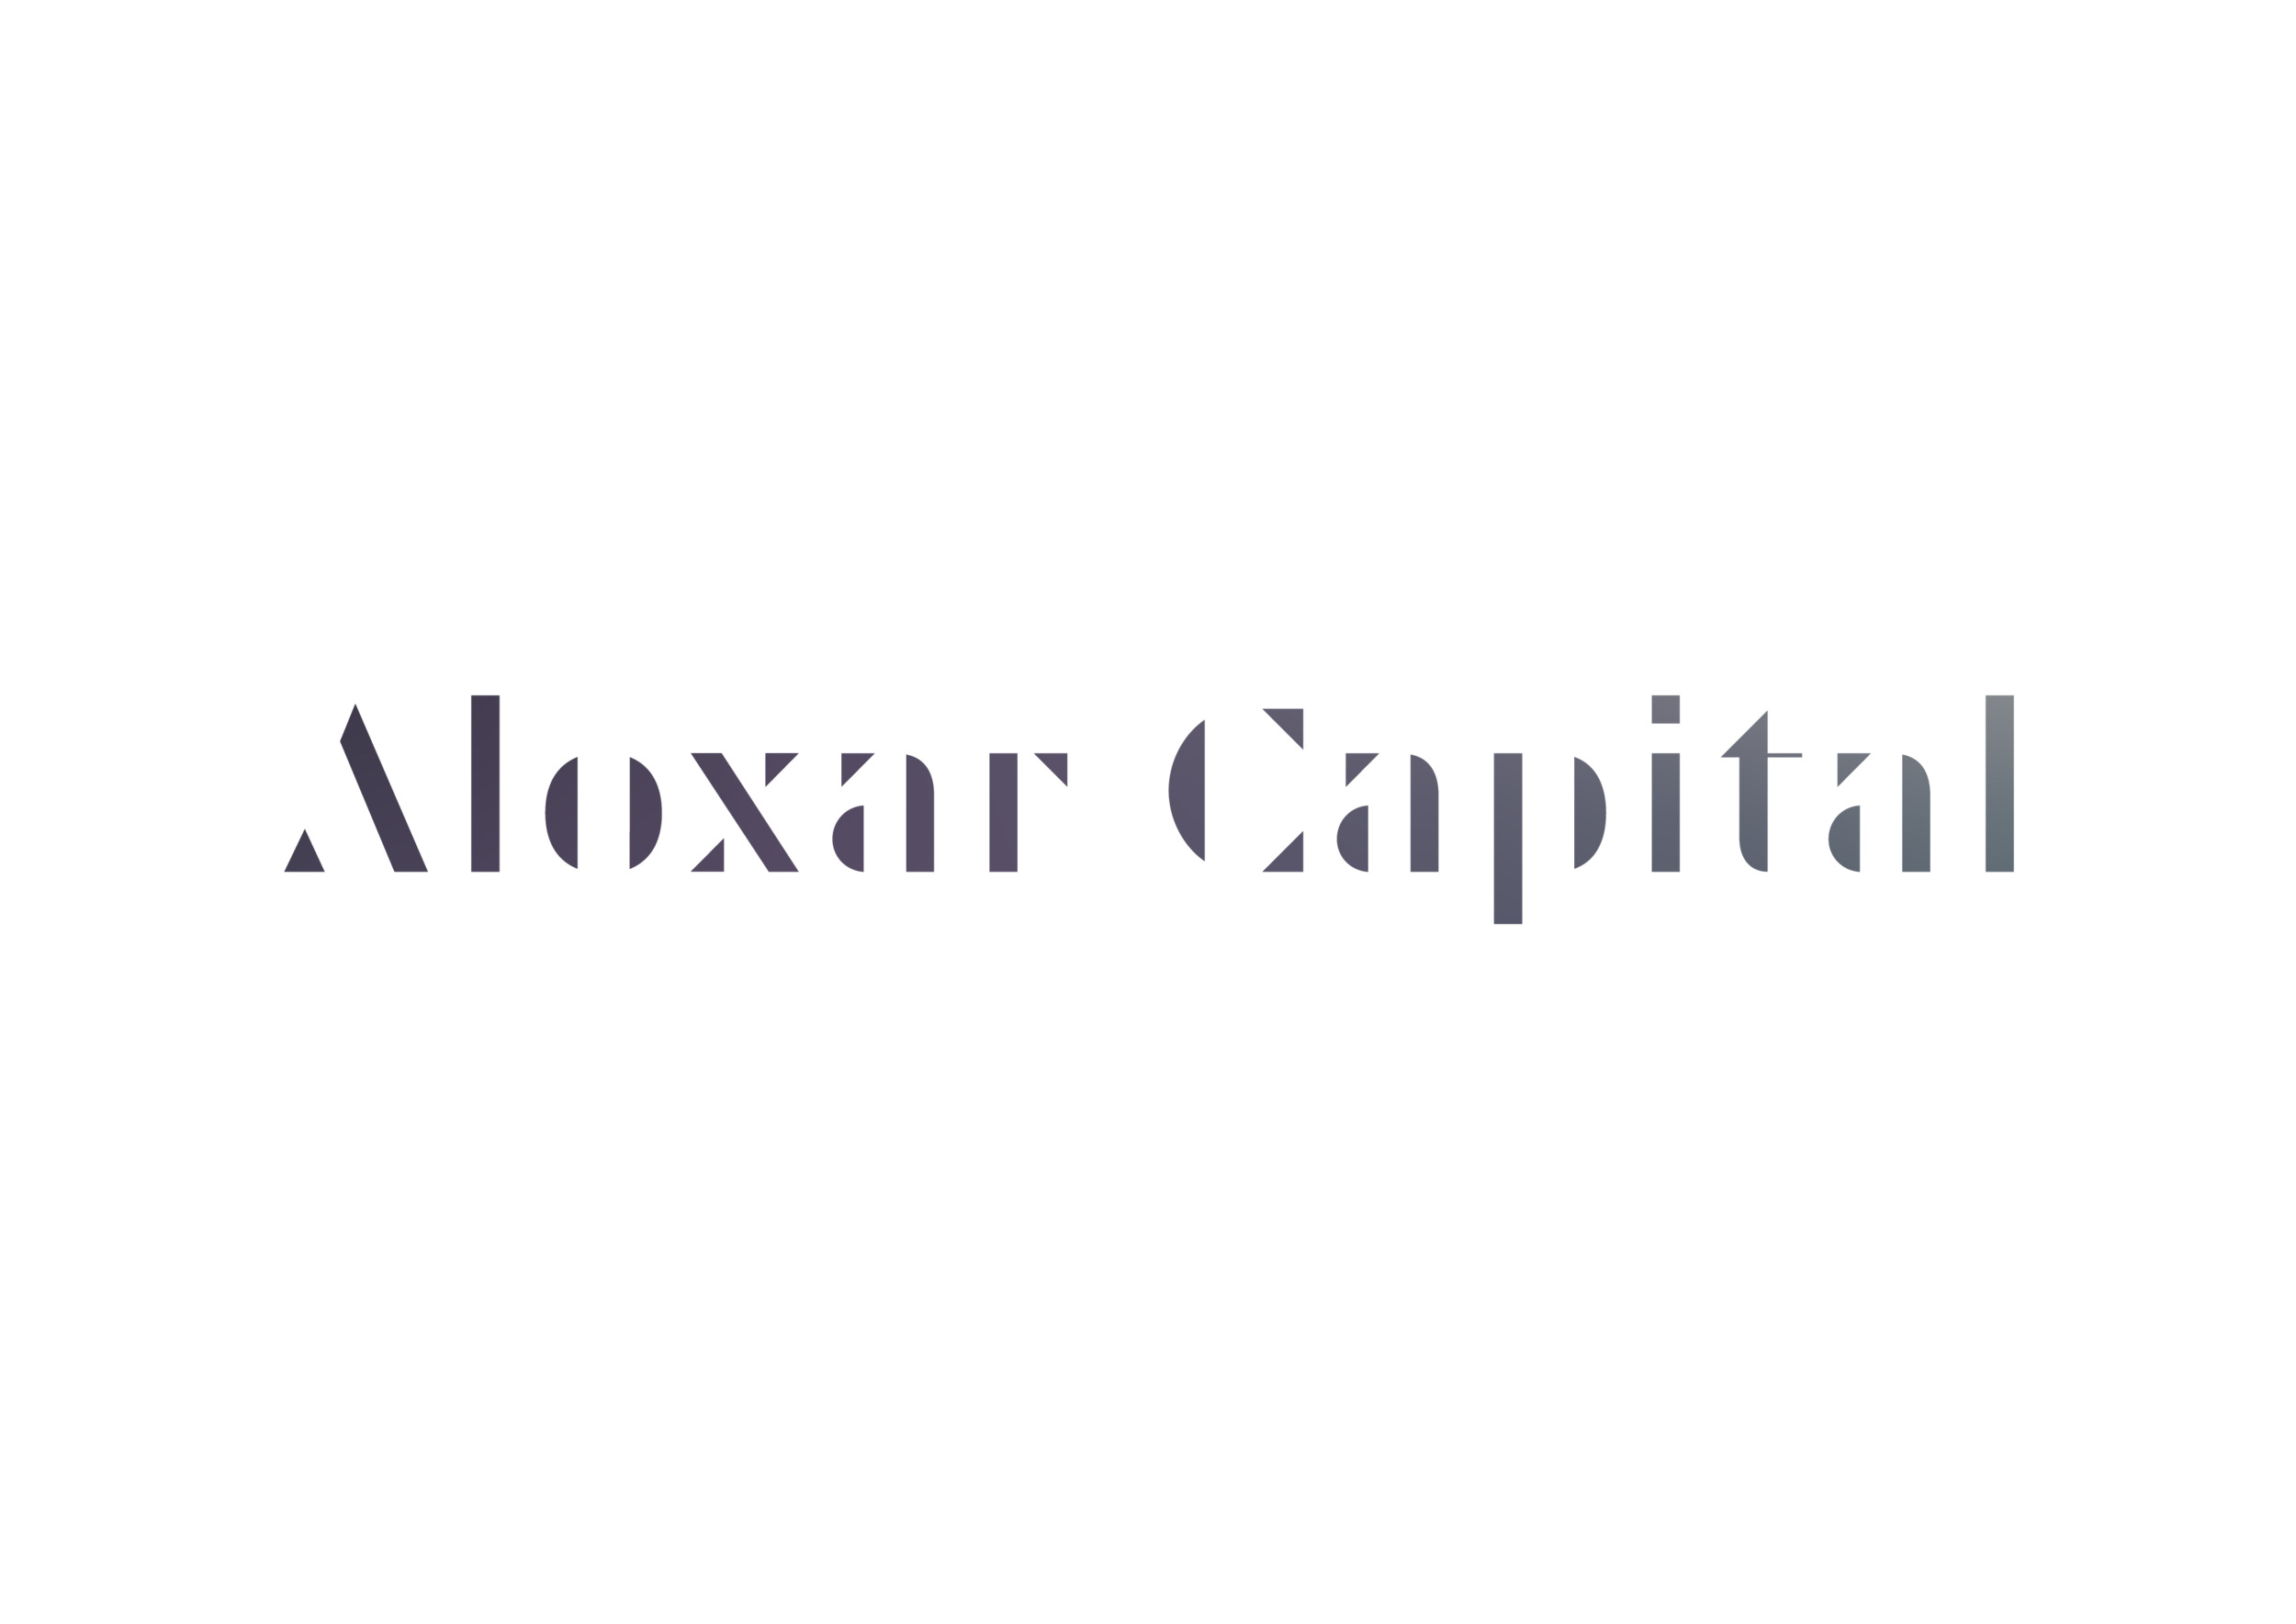 Aloxar Capital